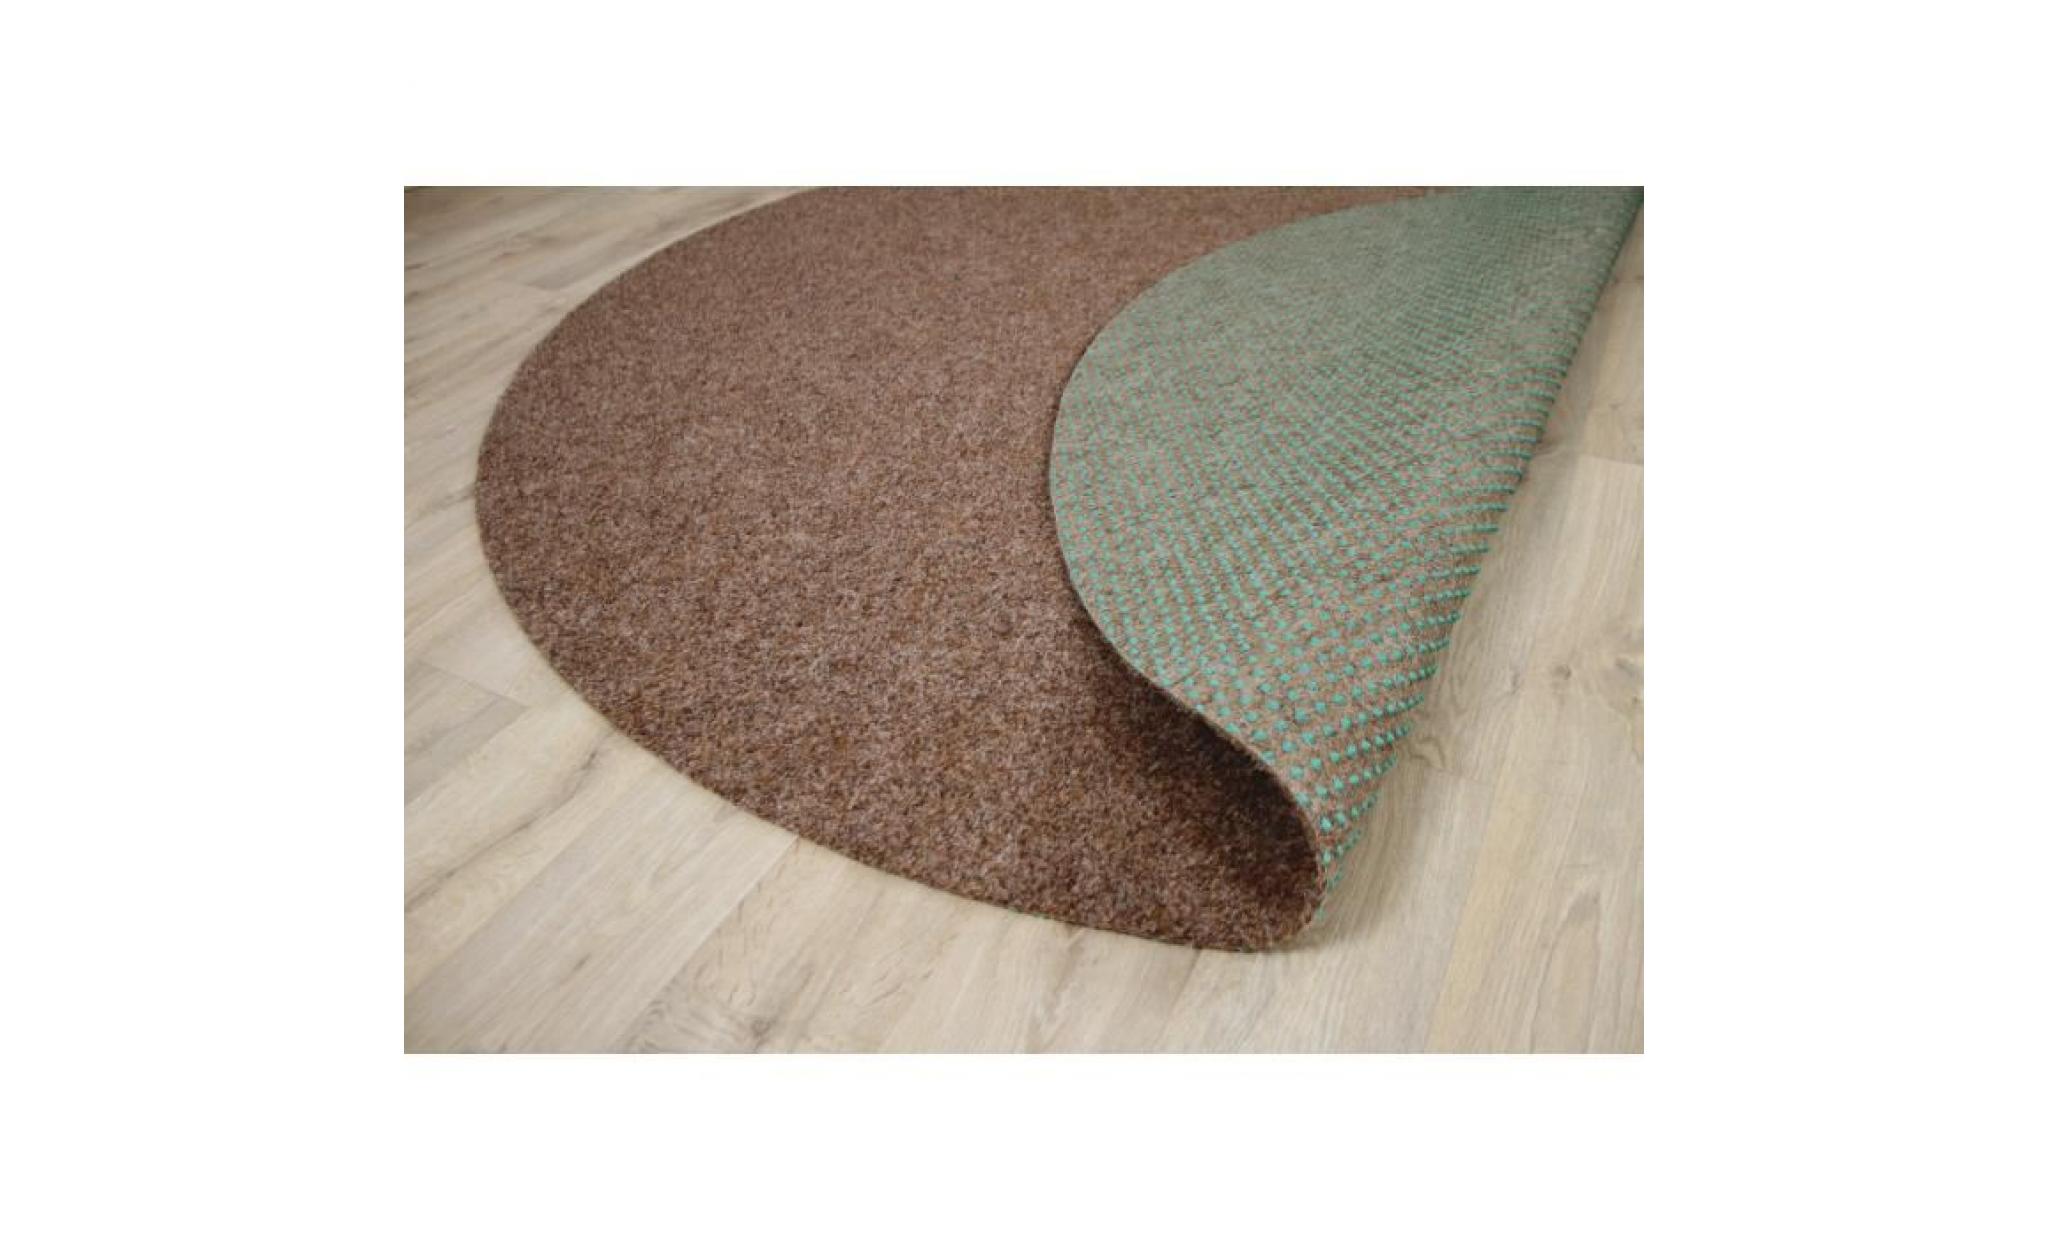 kingston   tapis type gazon artificiel rond – pour jardin, terrasse, balcon   anthracite   13 tailles disponibles [200 cm rond] pas cher